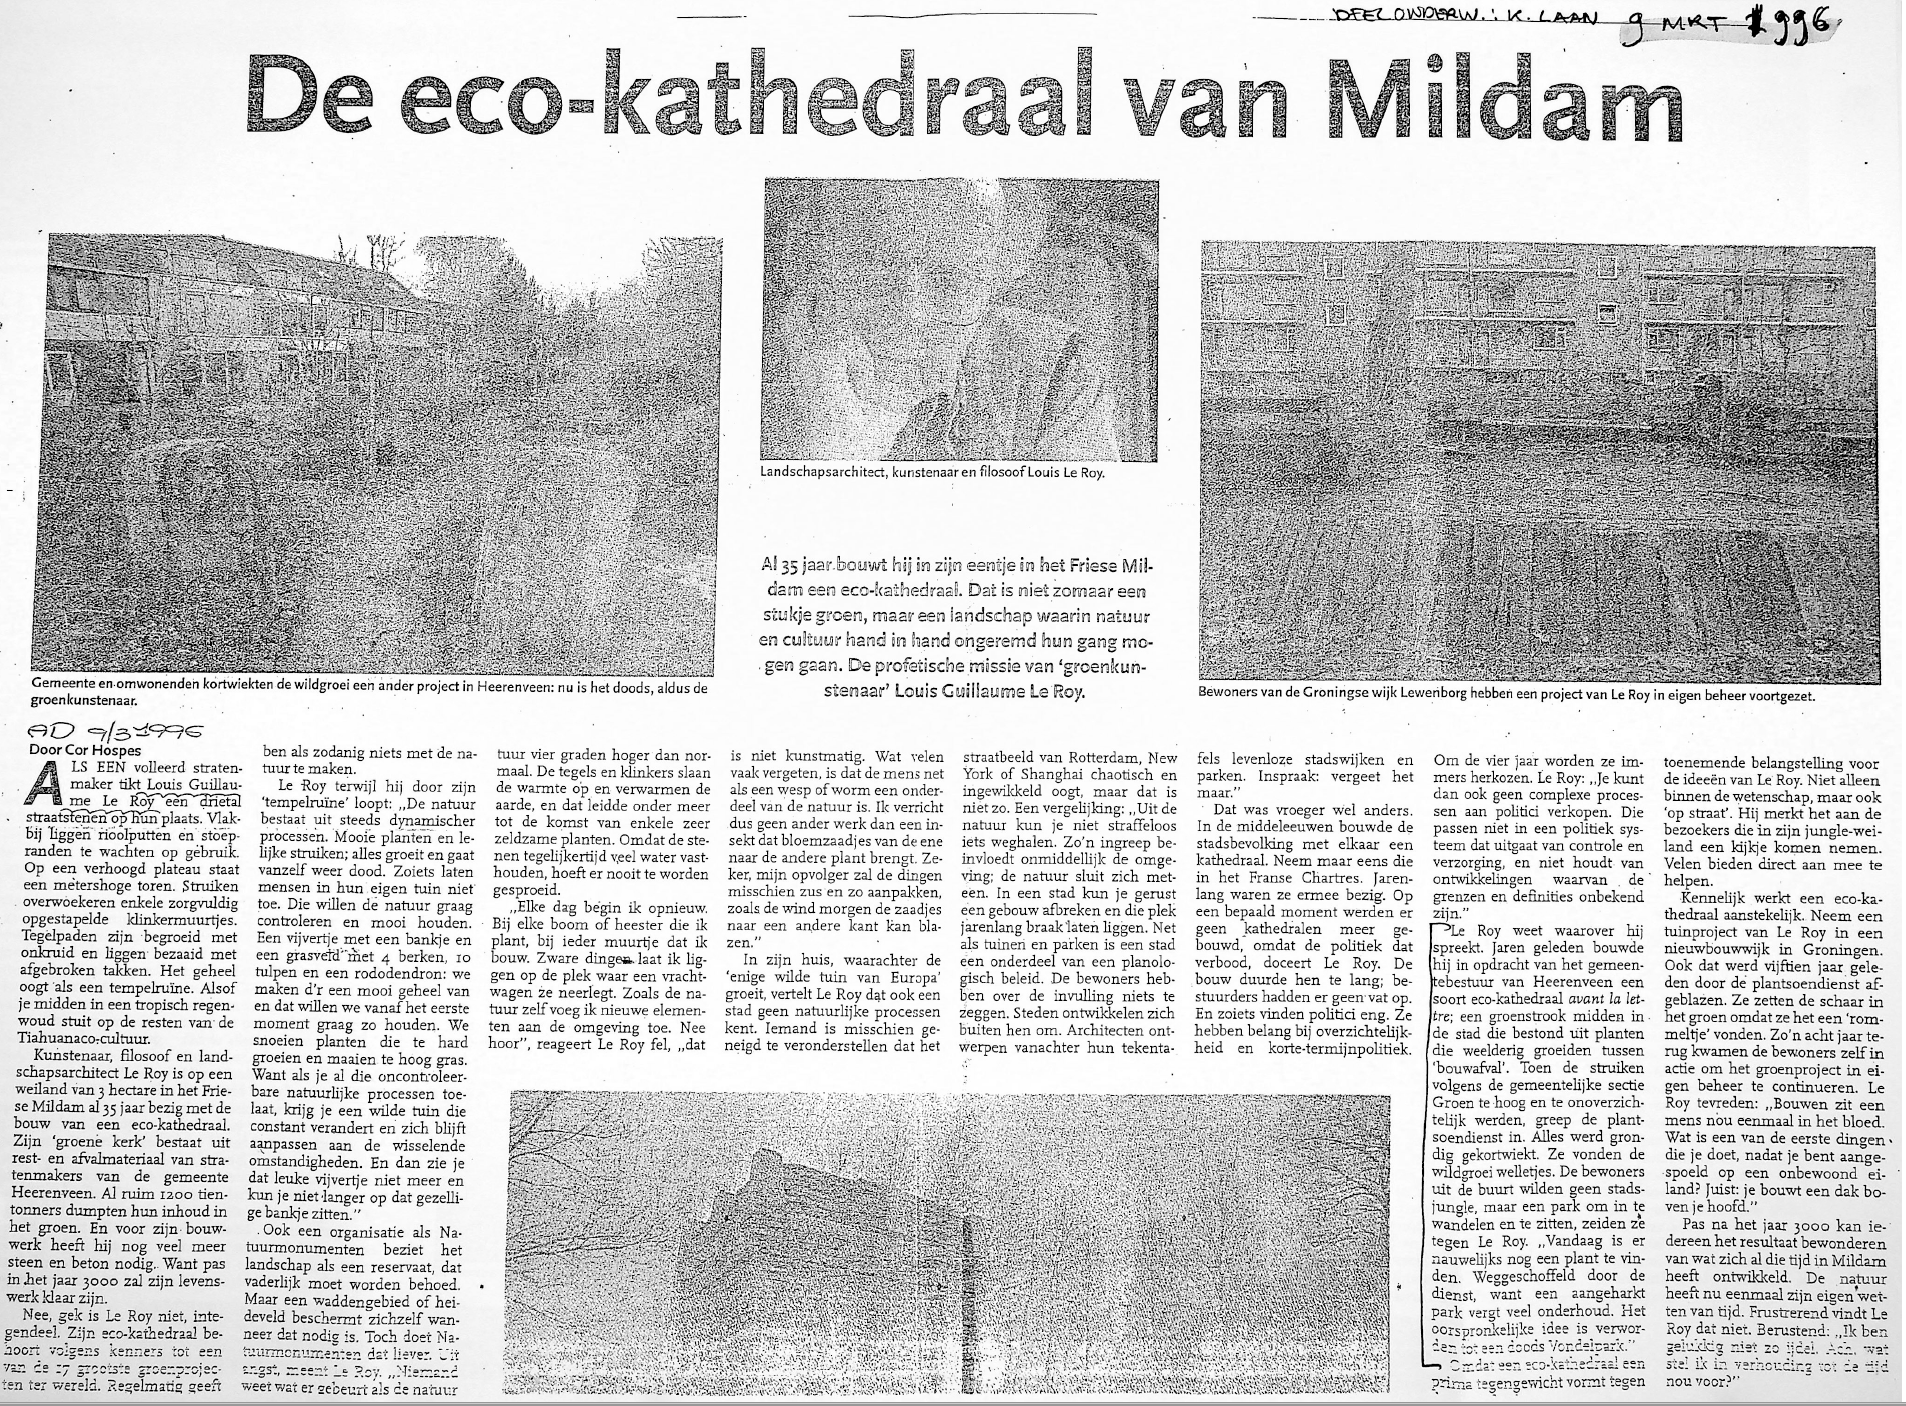 19960309_De_eco-kathedraal_van_Mildam_001.png